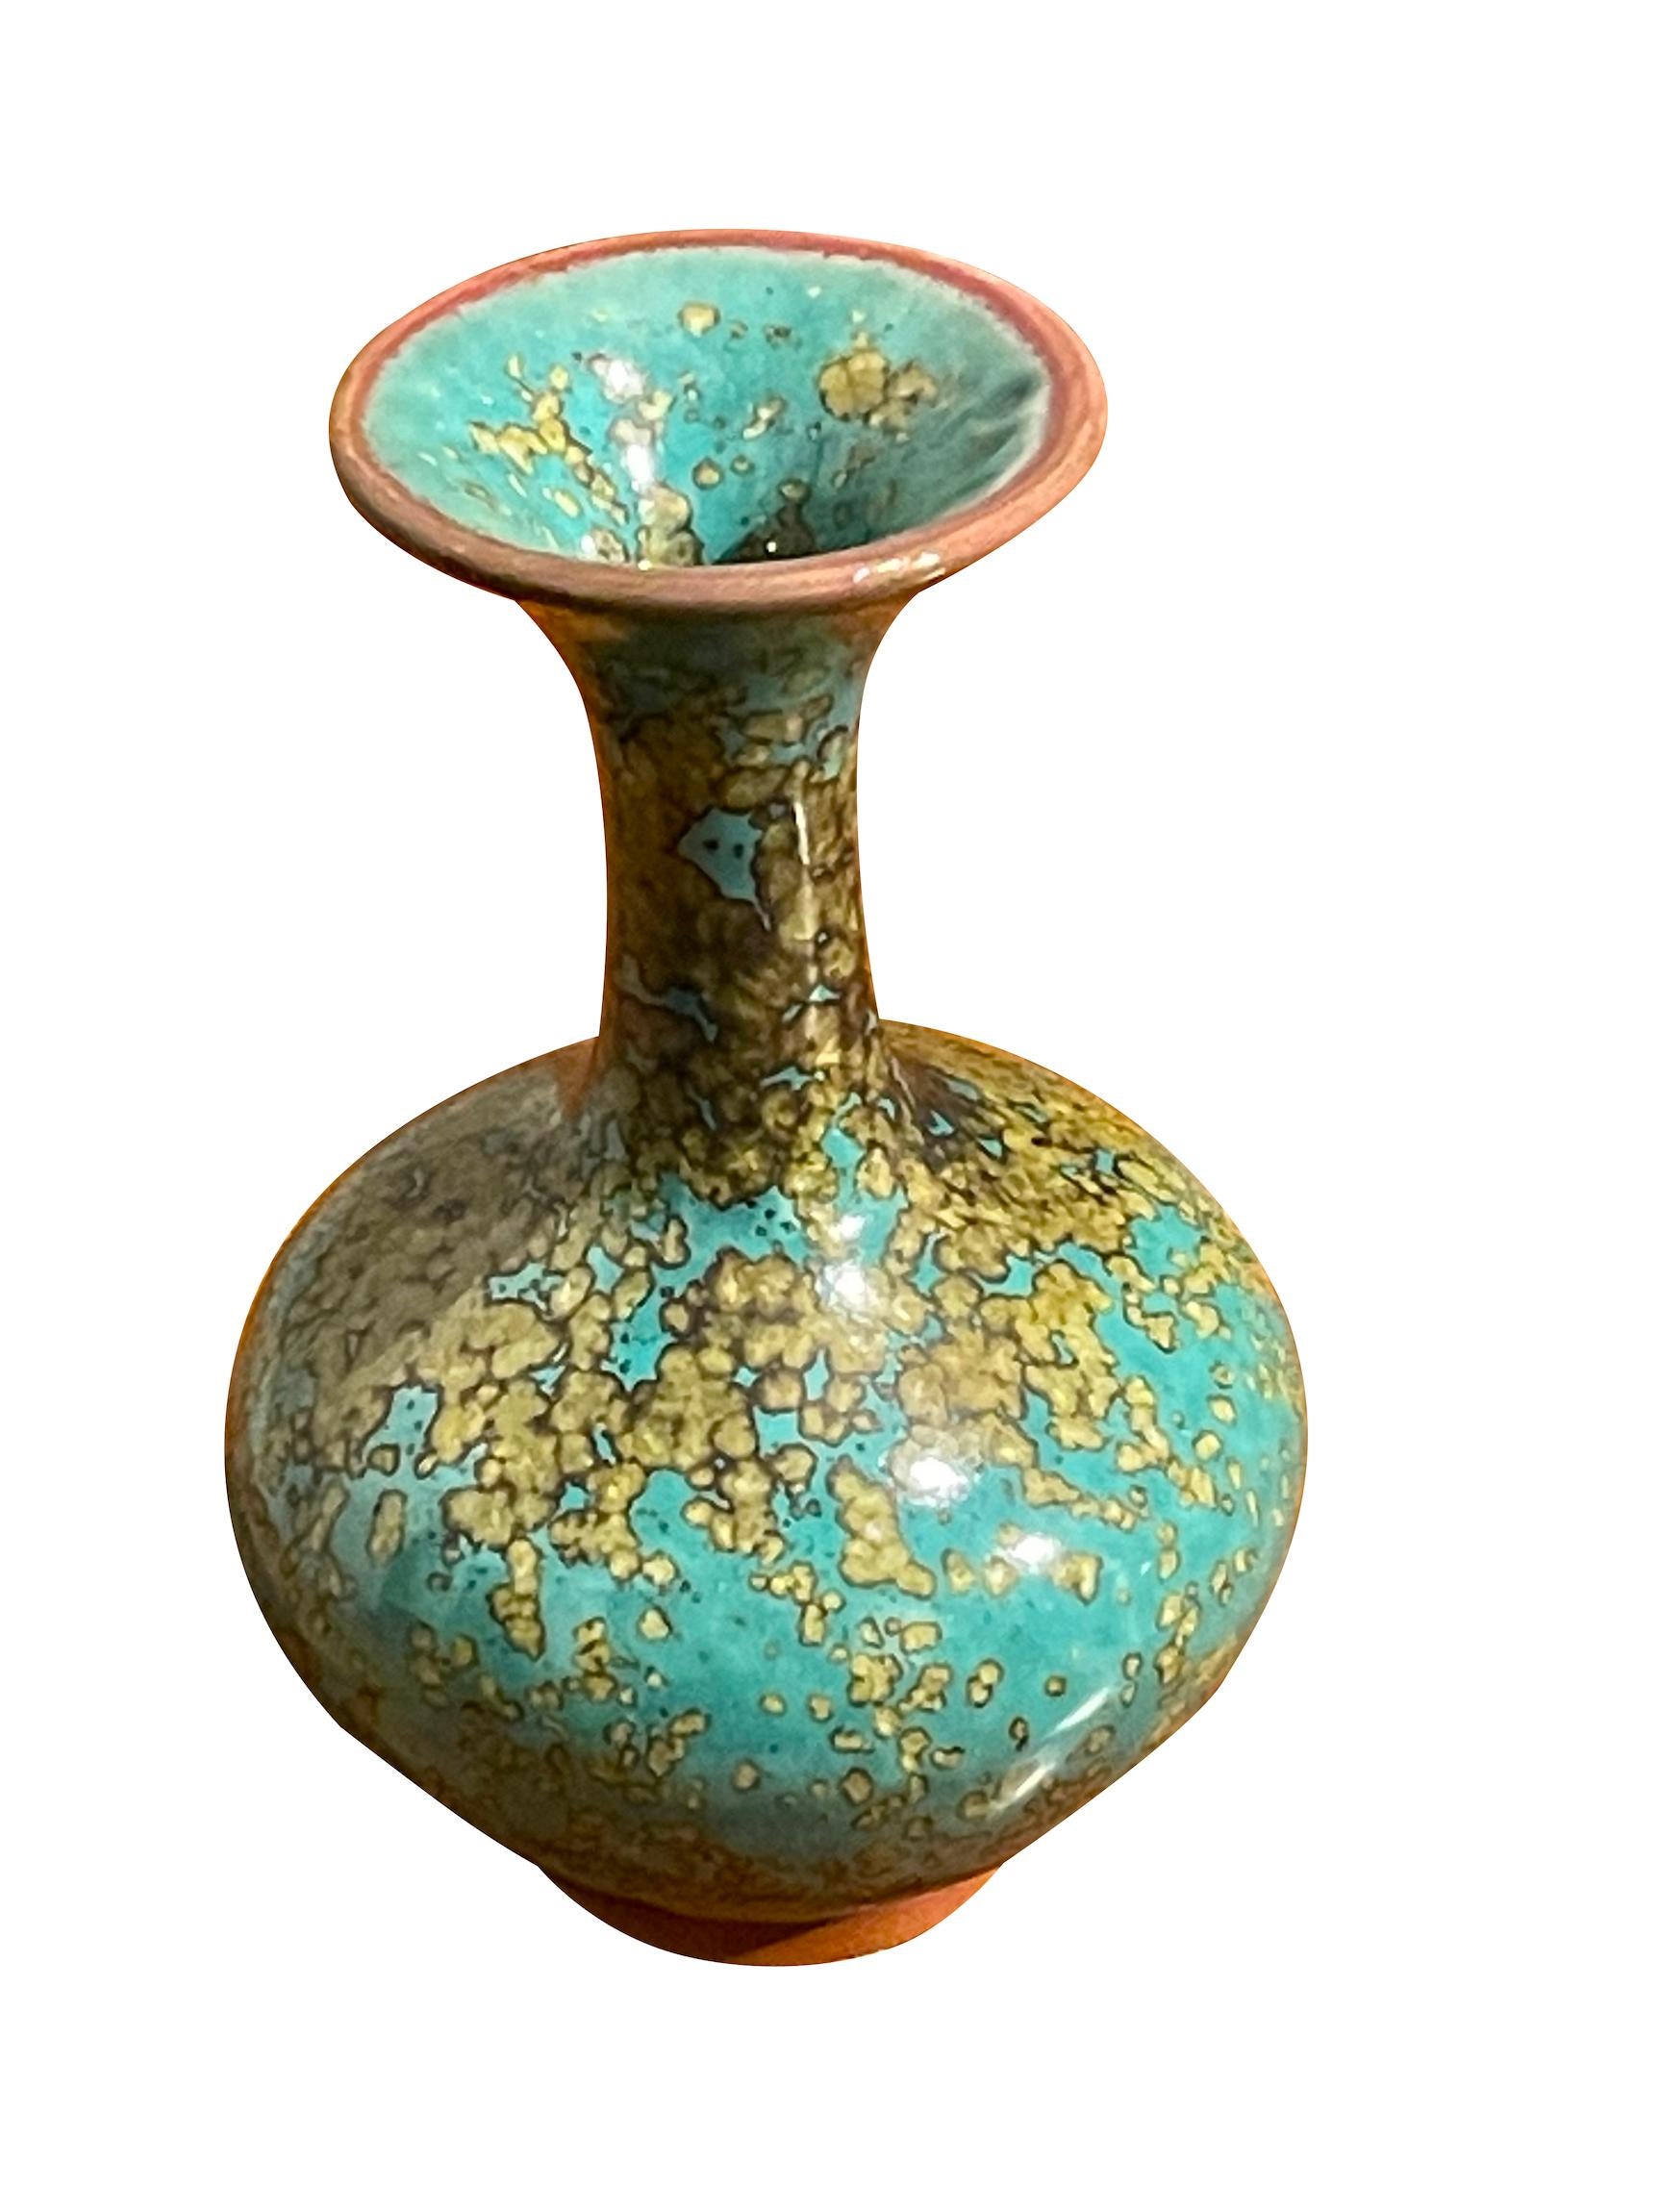 Zeitgenössische chinesische Vase in Türkis mit goldgesprenkelter Glasur.
Klassische Form mit breiter Ausgussöffnung.
Eines von mehreren Stücken aus einer großen Sammlung.
ANKOMMENDER MÄRZ